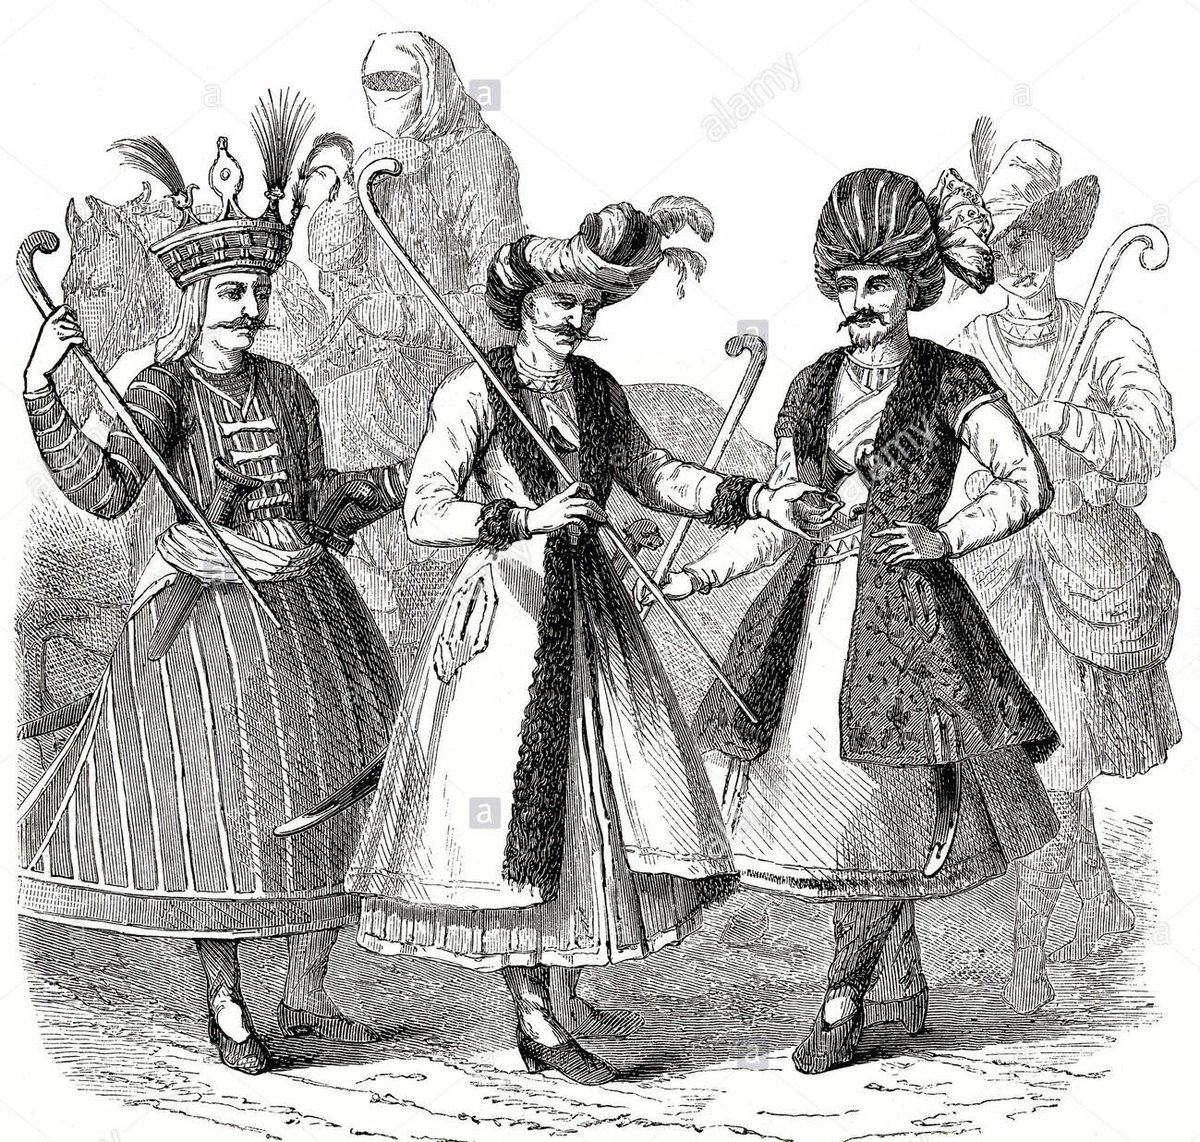 Au delà de l’architecture, les costumes ont été imaginés à partir de modèles issus de la civilisation persane datant du XVIe siècle. Le costume d’Asmar à la fin du film par exemple y fait référence, par le turban et les plumes sur la tête.